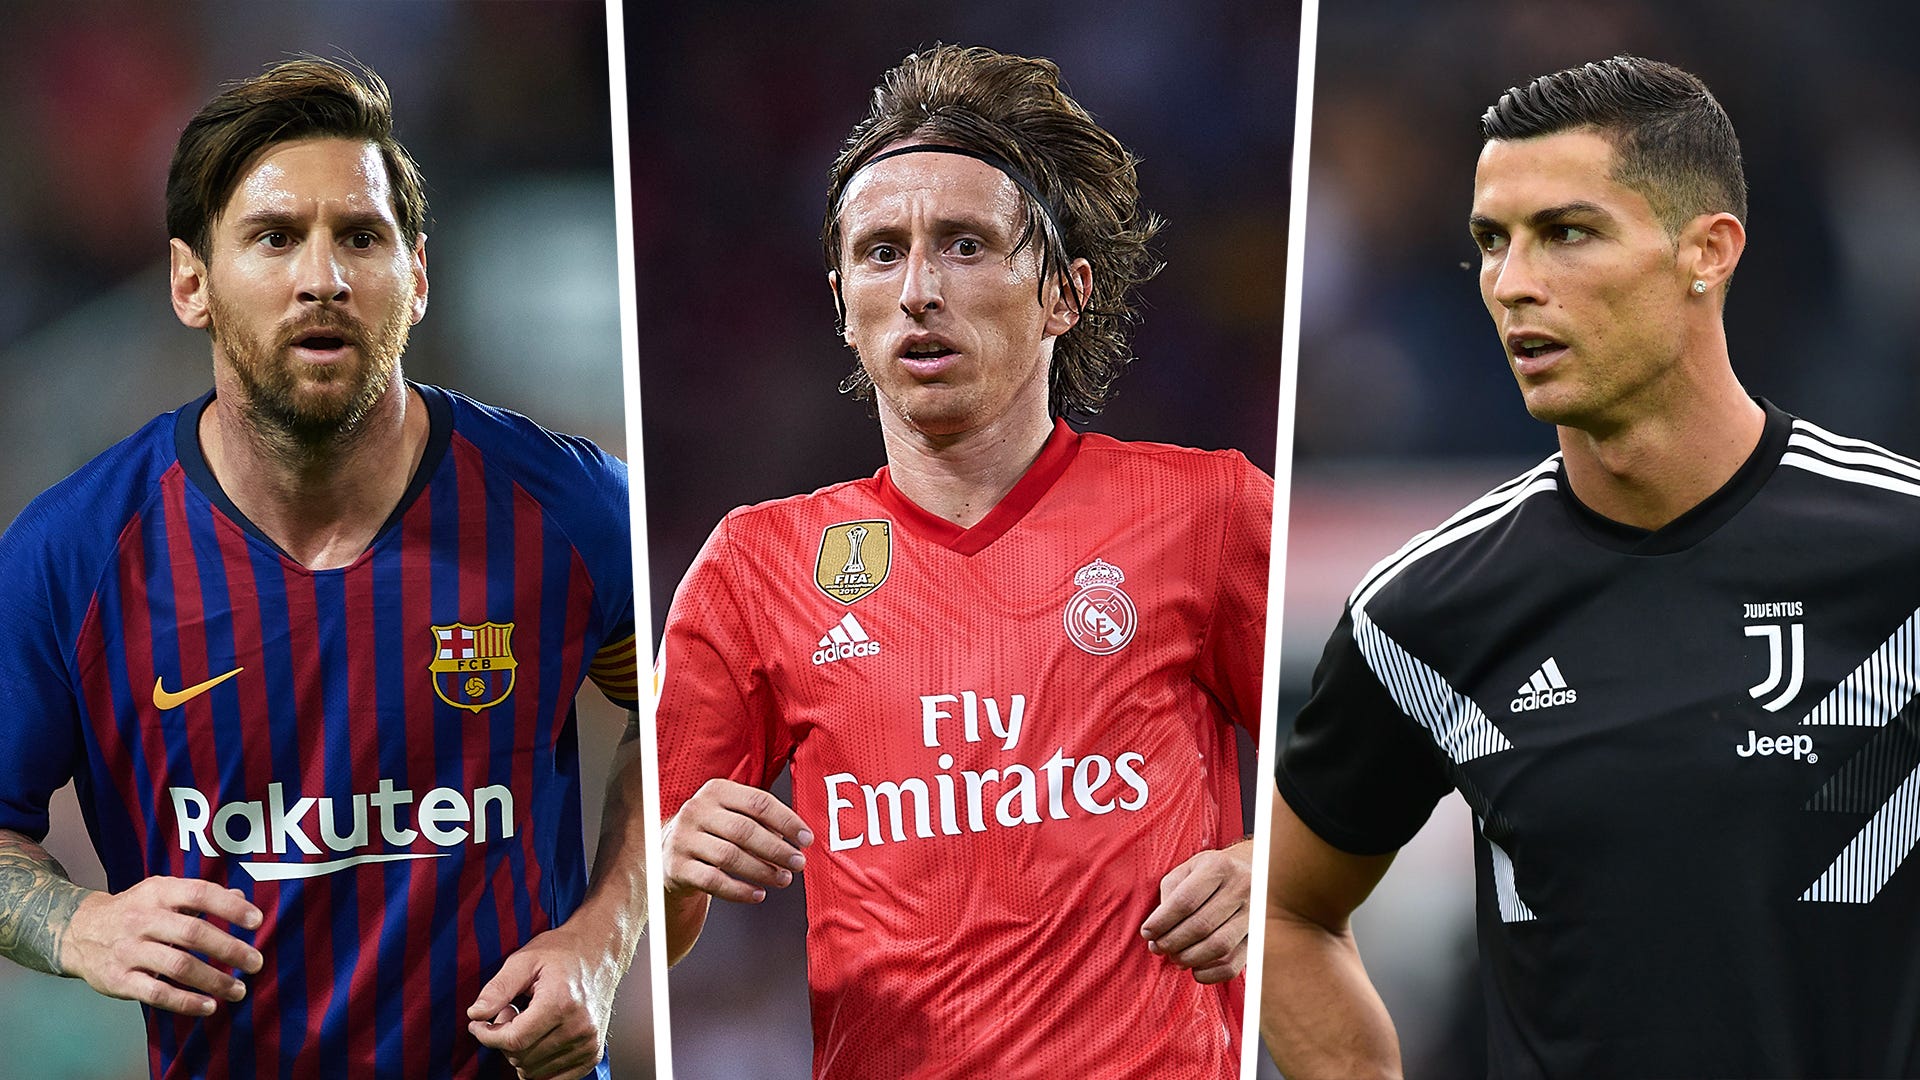 Không chỉ nổi tiếng với kỹ thuật điêu luyện trên sân cỏ, Luka Modric, Ronaldo và Messi còn là những người bạn thân thiết. Hình ảnh 3 ngôi sao này cùng nhau sẽ khiến bạn cảm thấy thật gần gũi và hào hứng. Xem ngay hình nền đẹp nhất nhé!